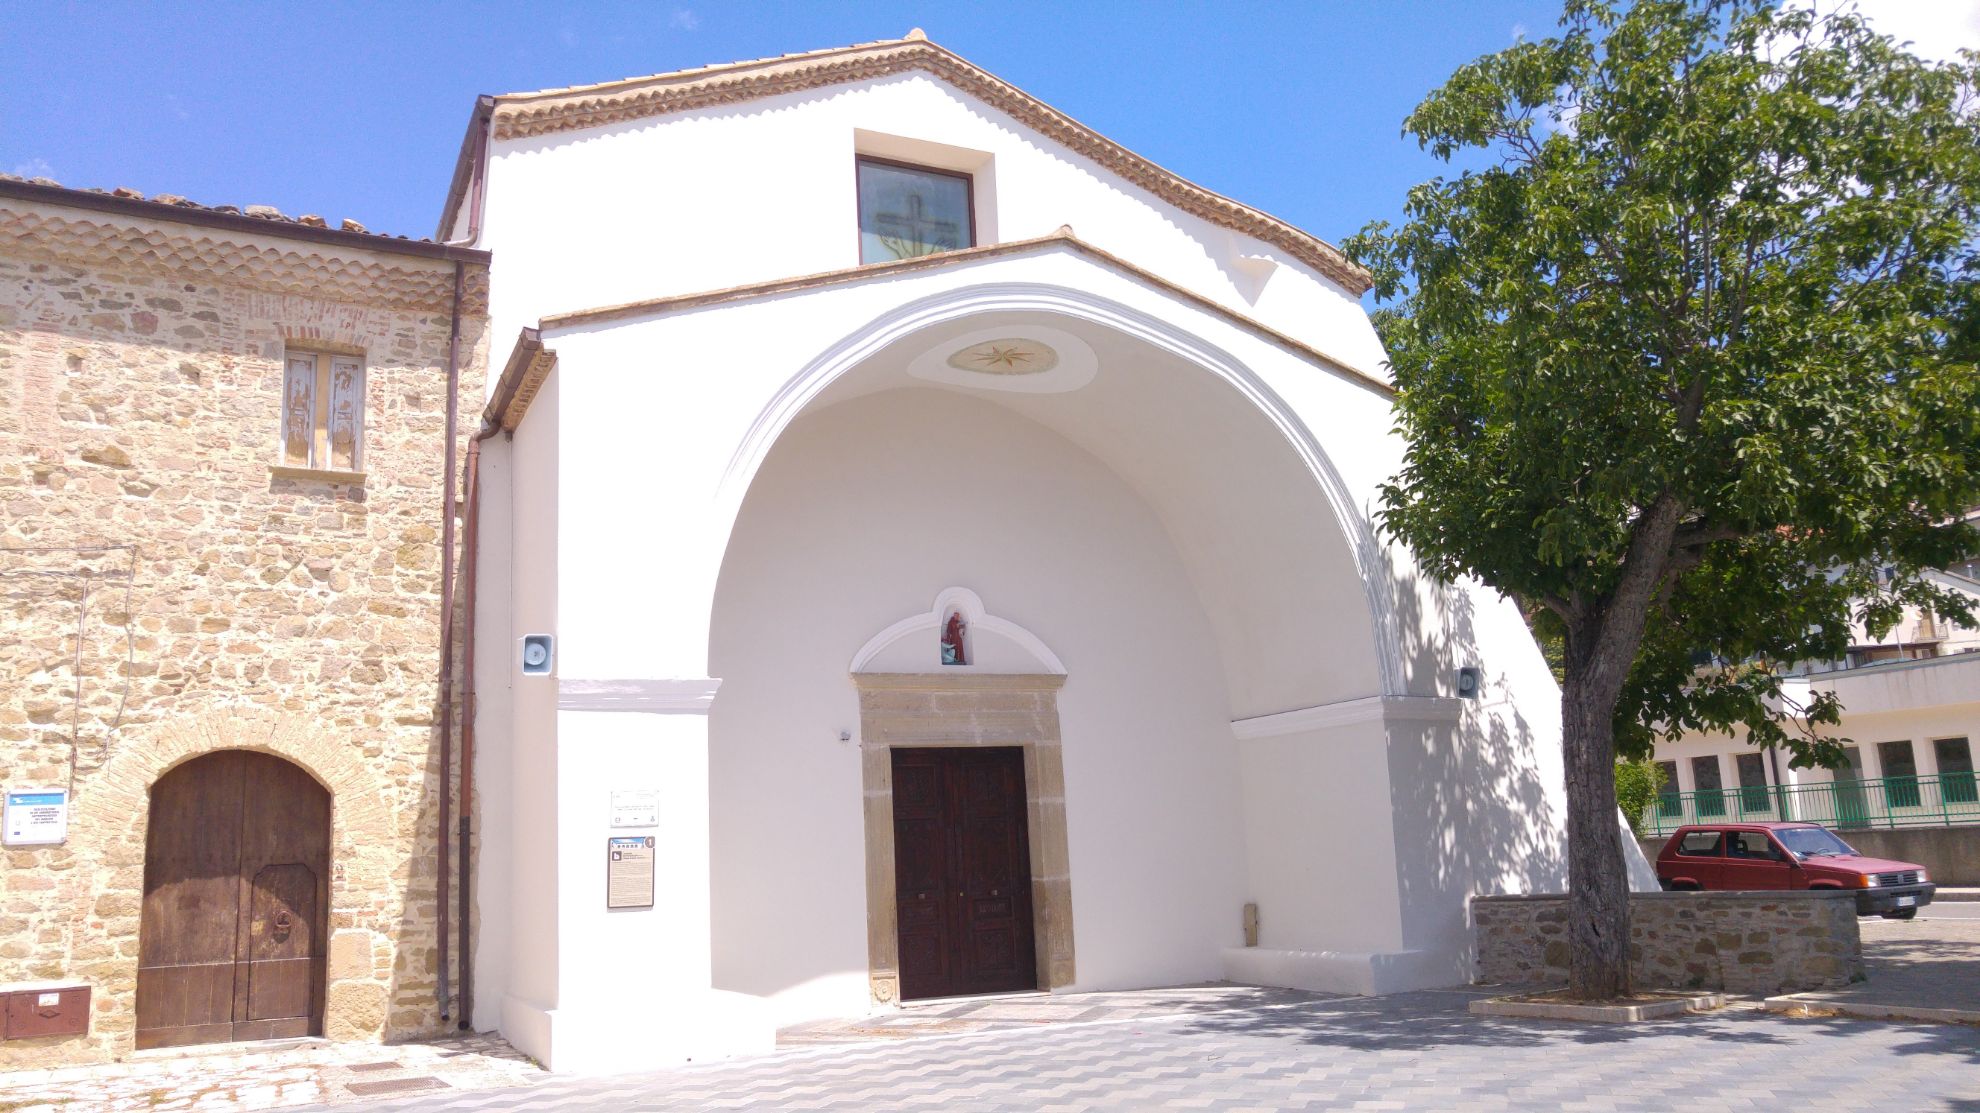 Convento dei francescani dell'Osservanza e Chiesa di Sant'Antonio da Padova